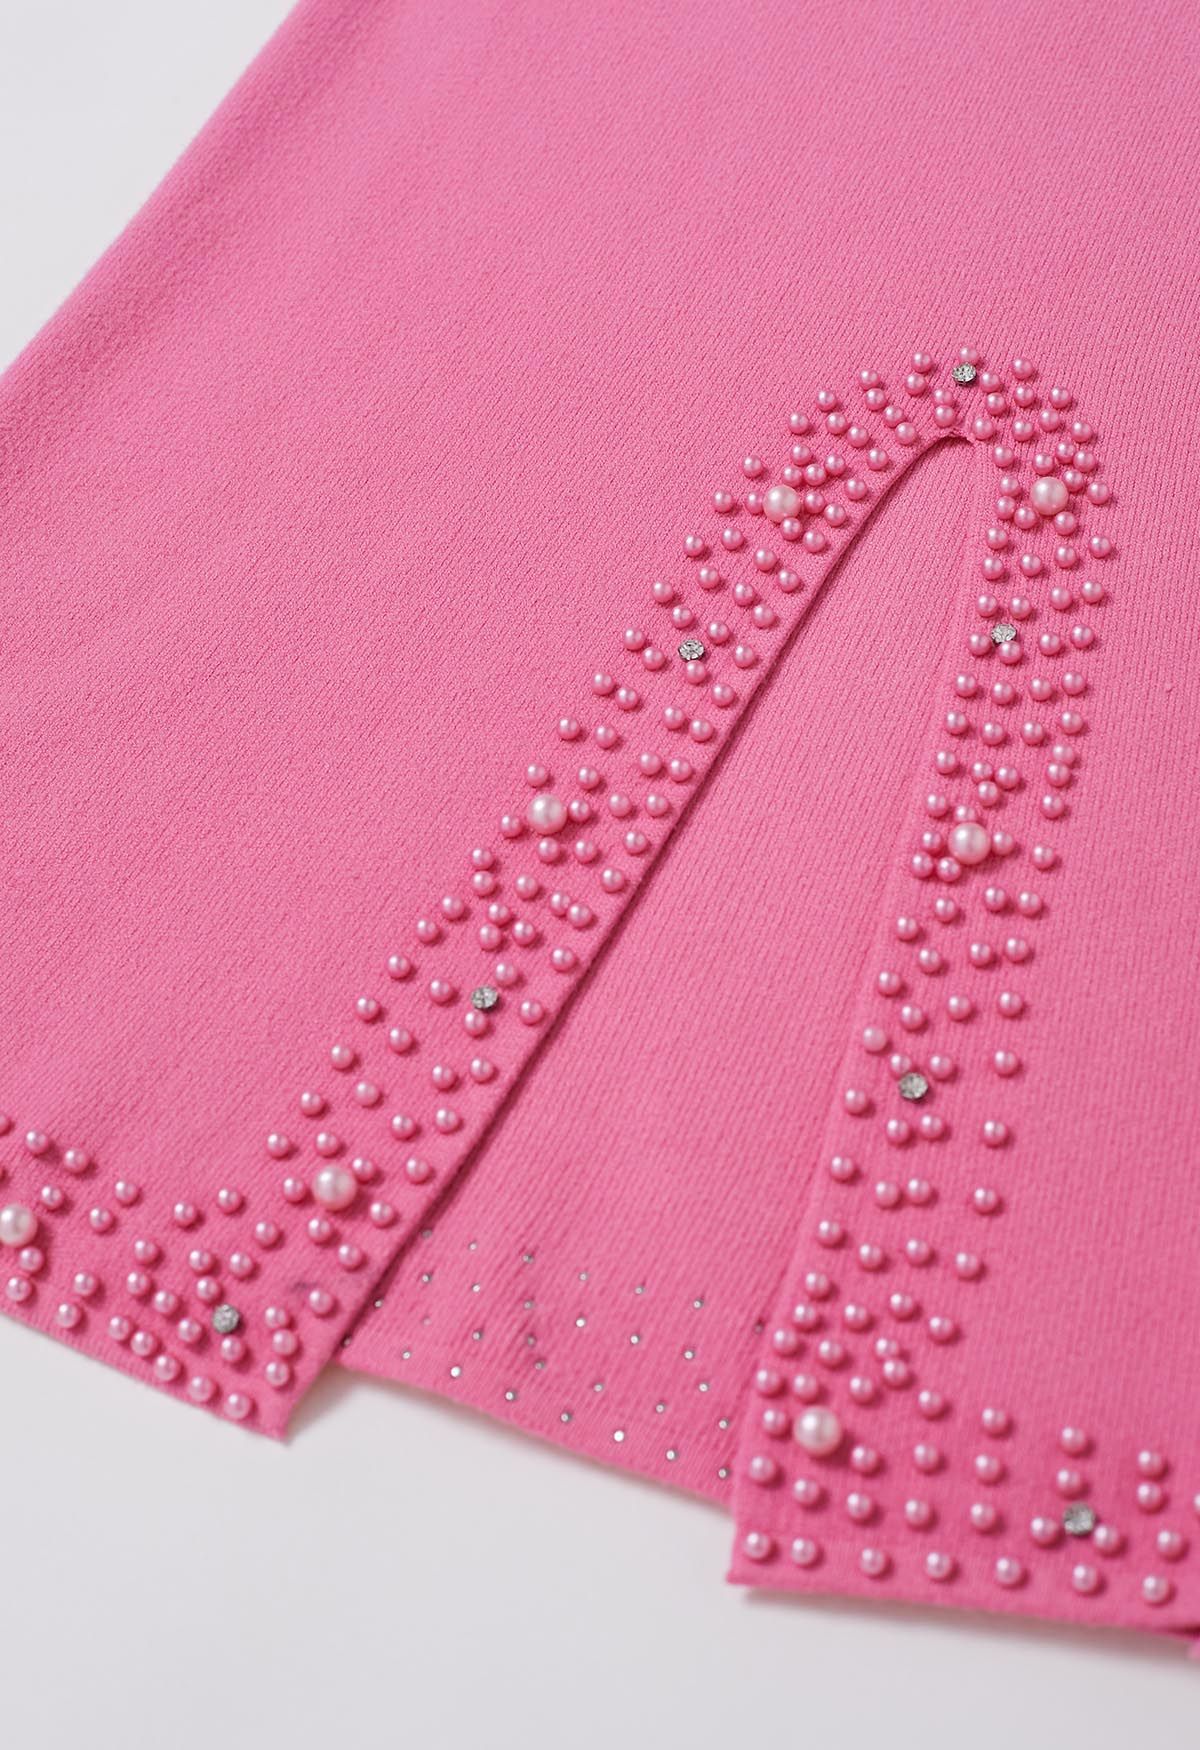 Pearl Embellished Slit Hem Knit Pencil Skirt in Hot Pink